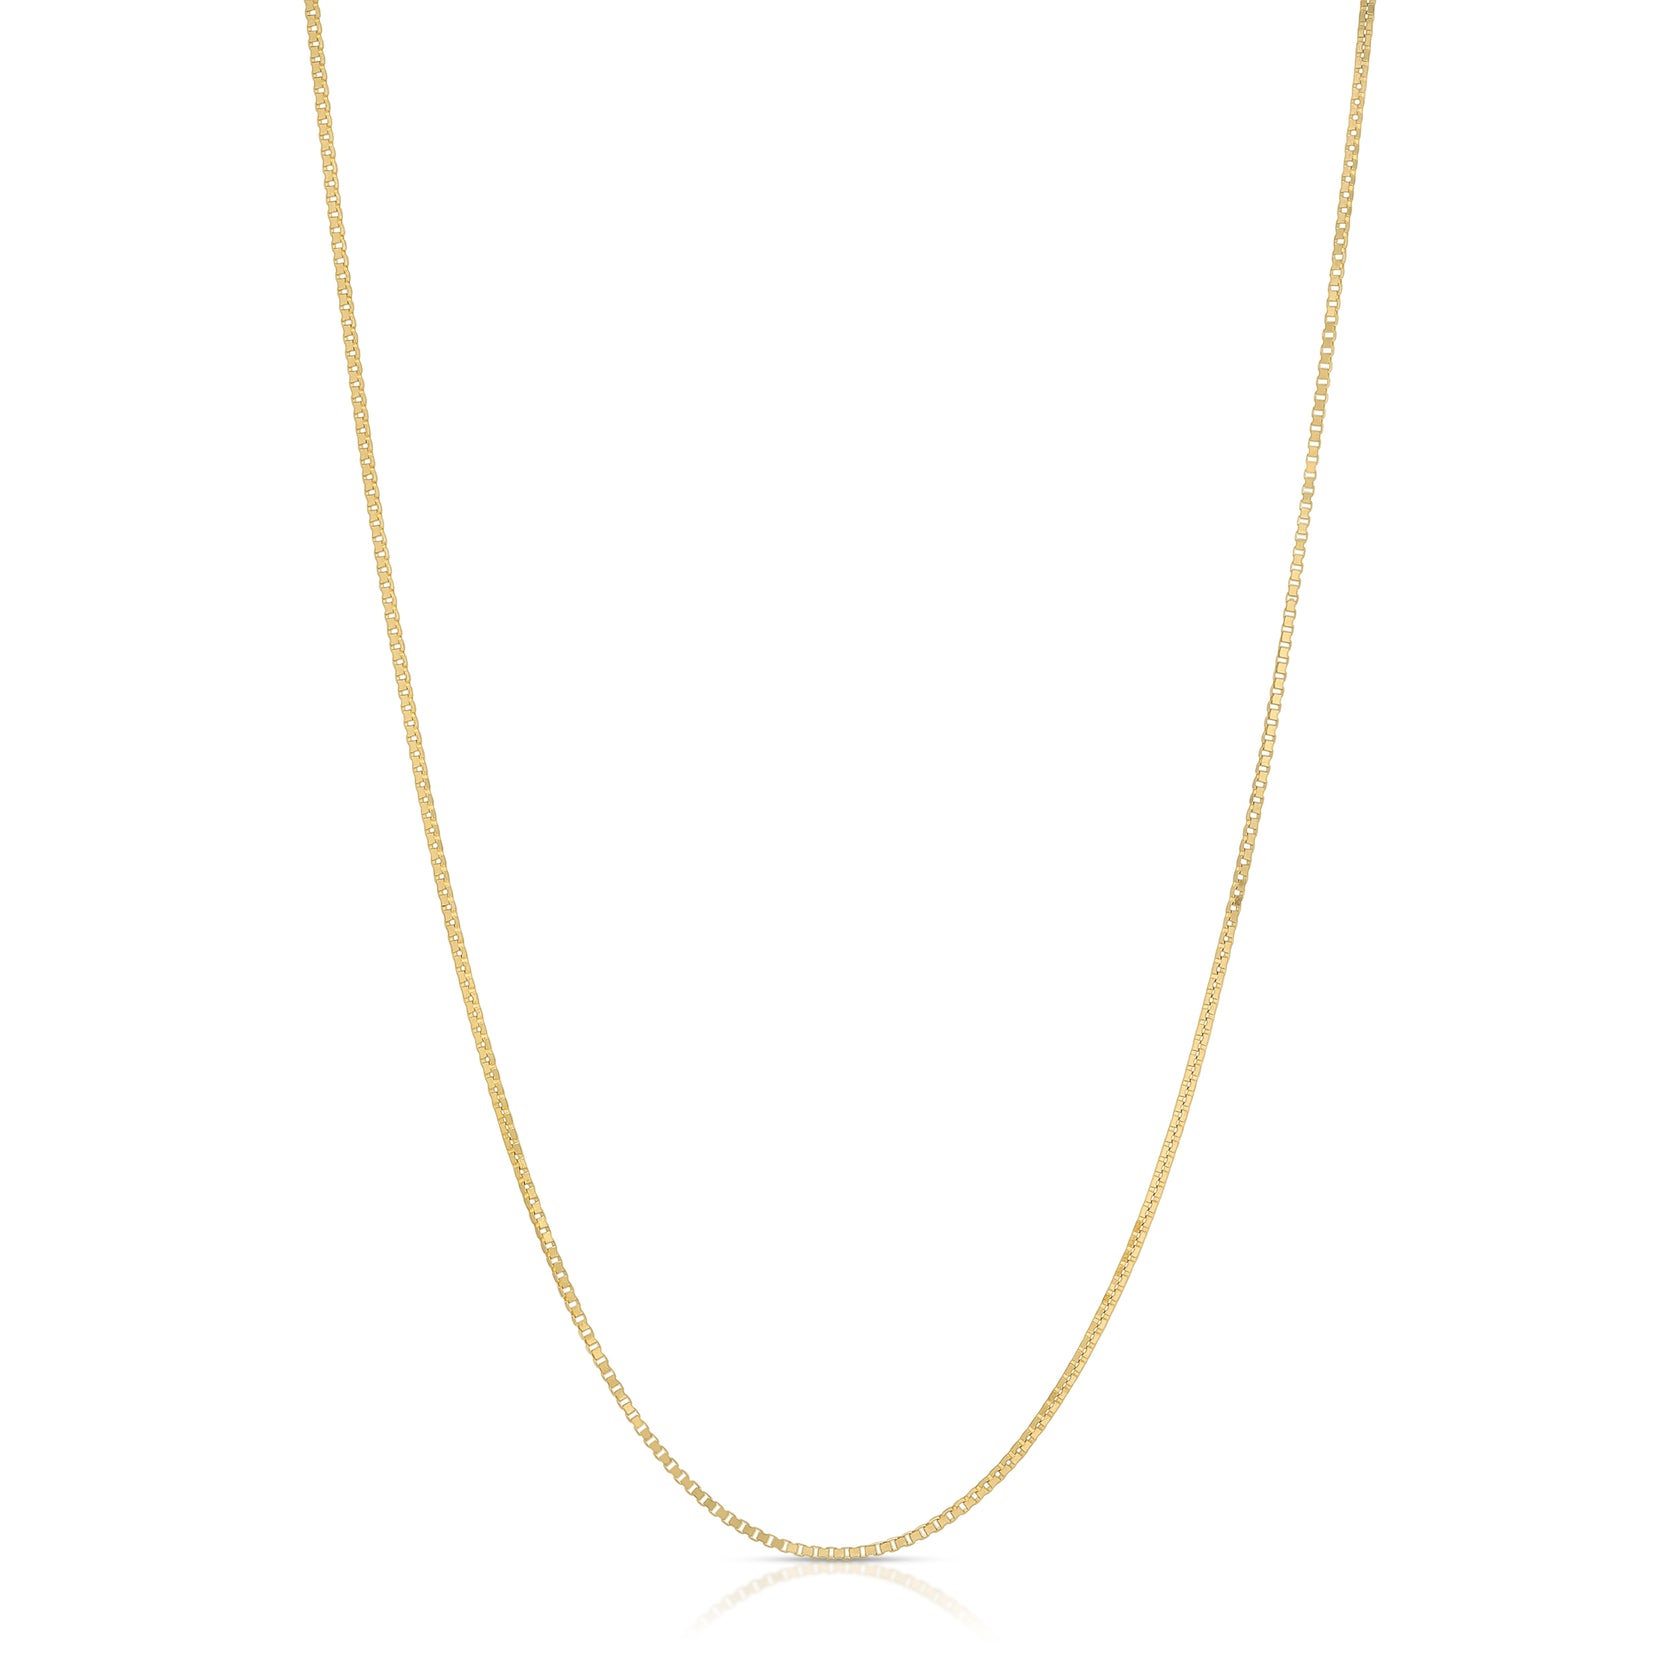 Box Chain – Design Gold Jewelry